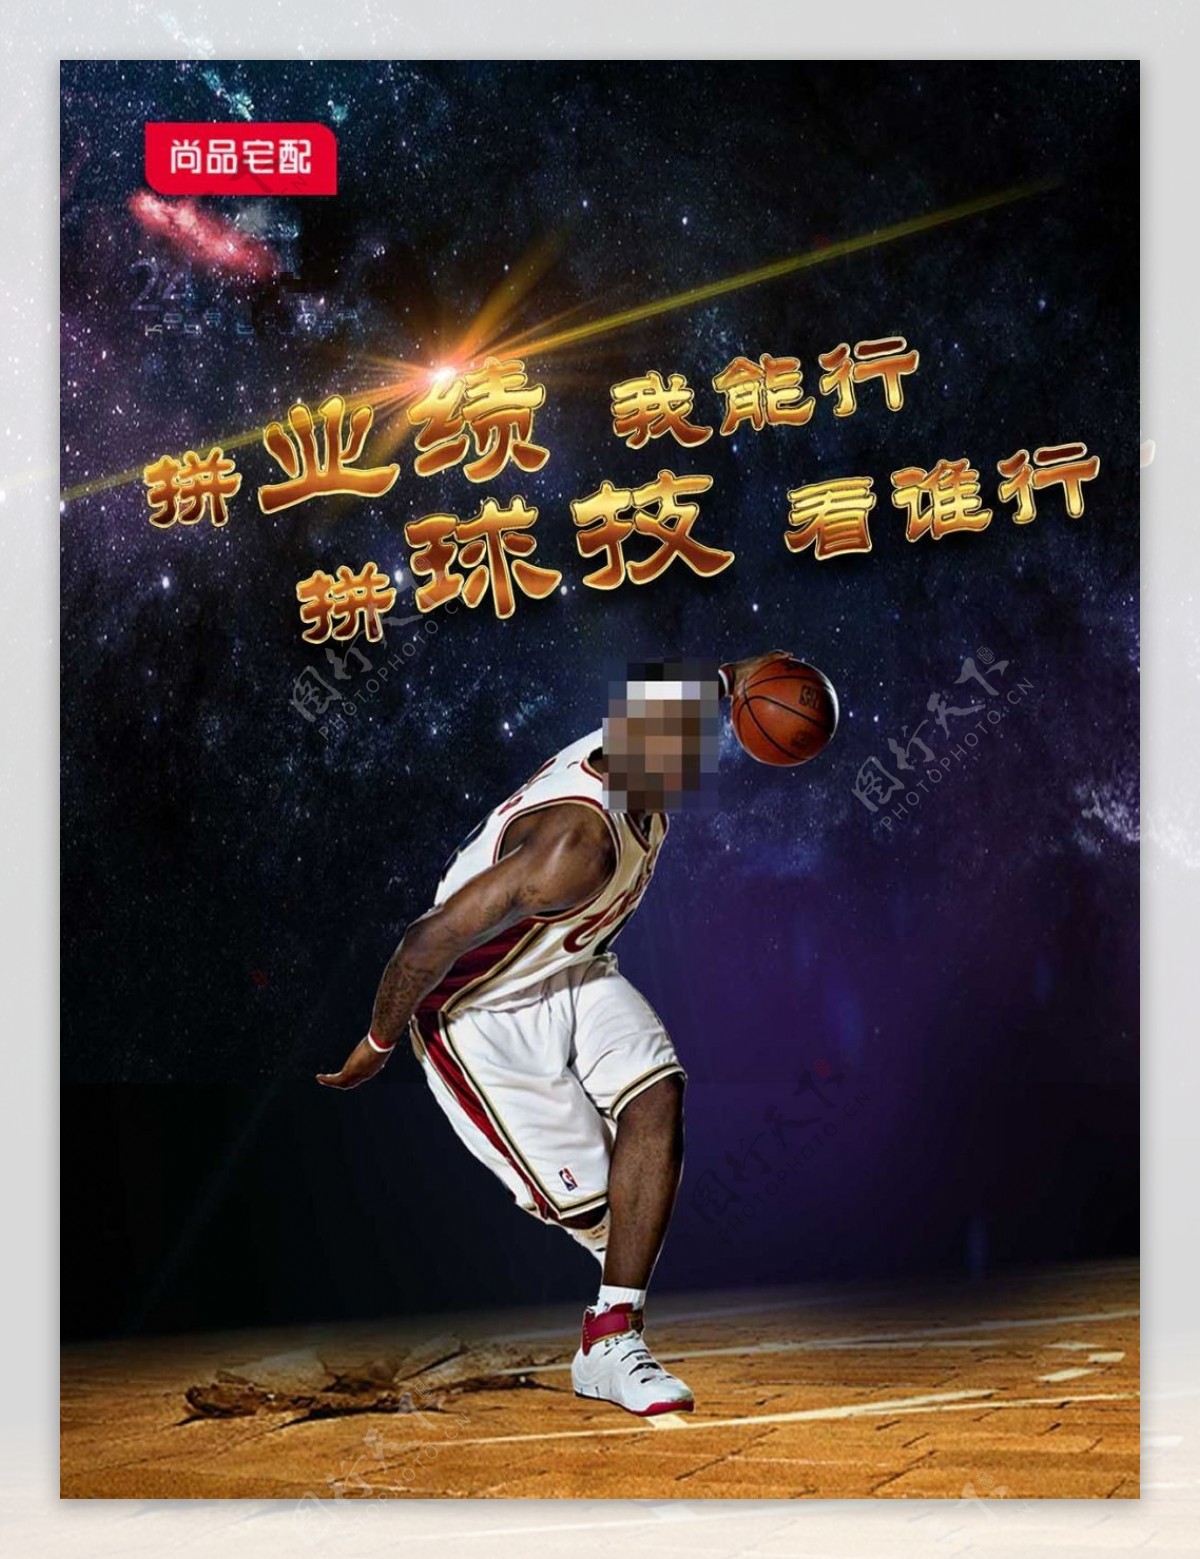 篮球宣传海报